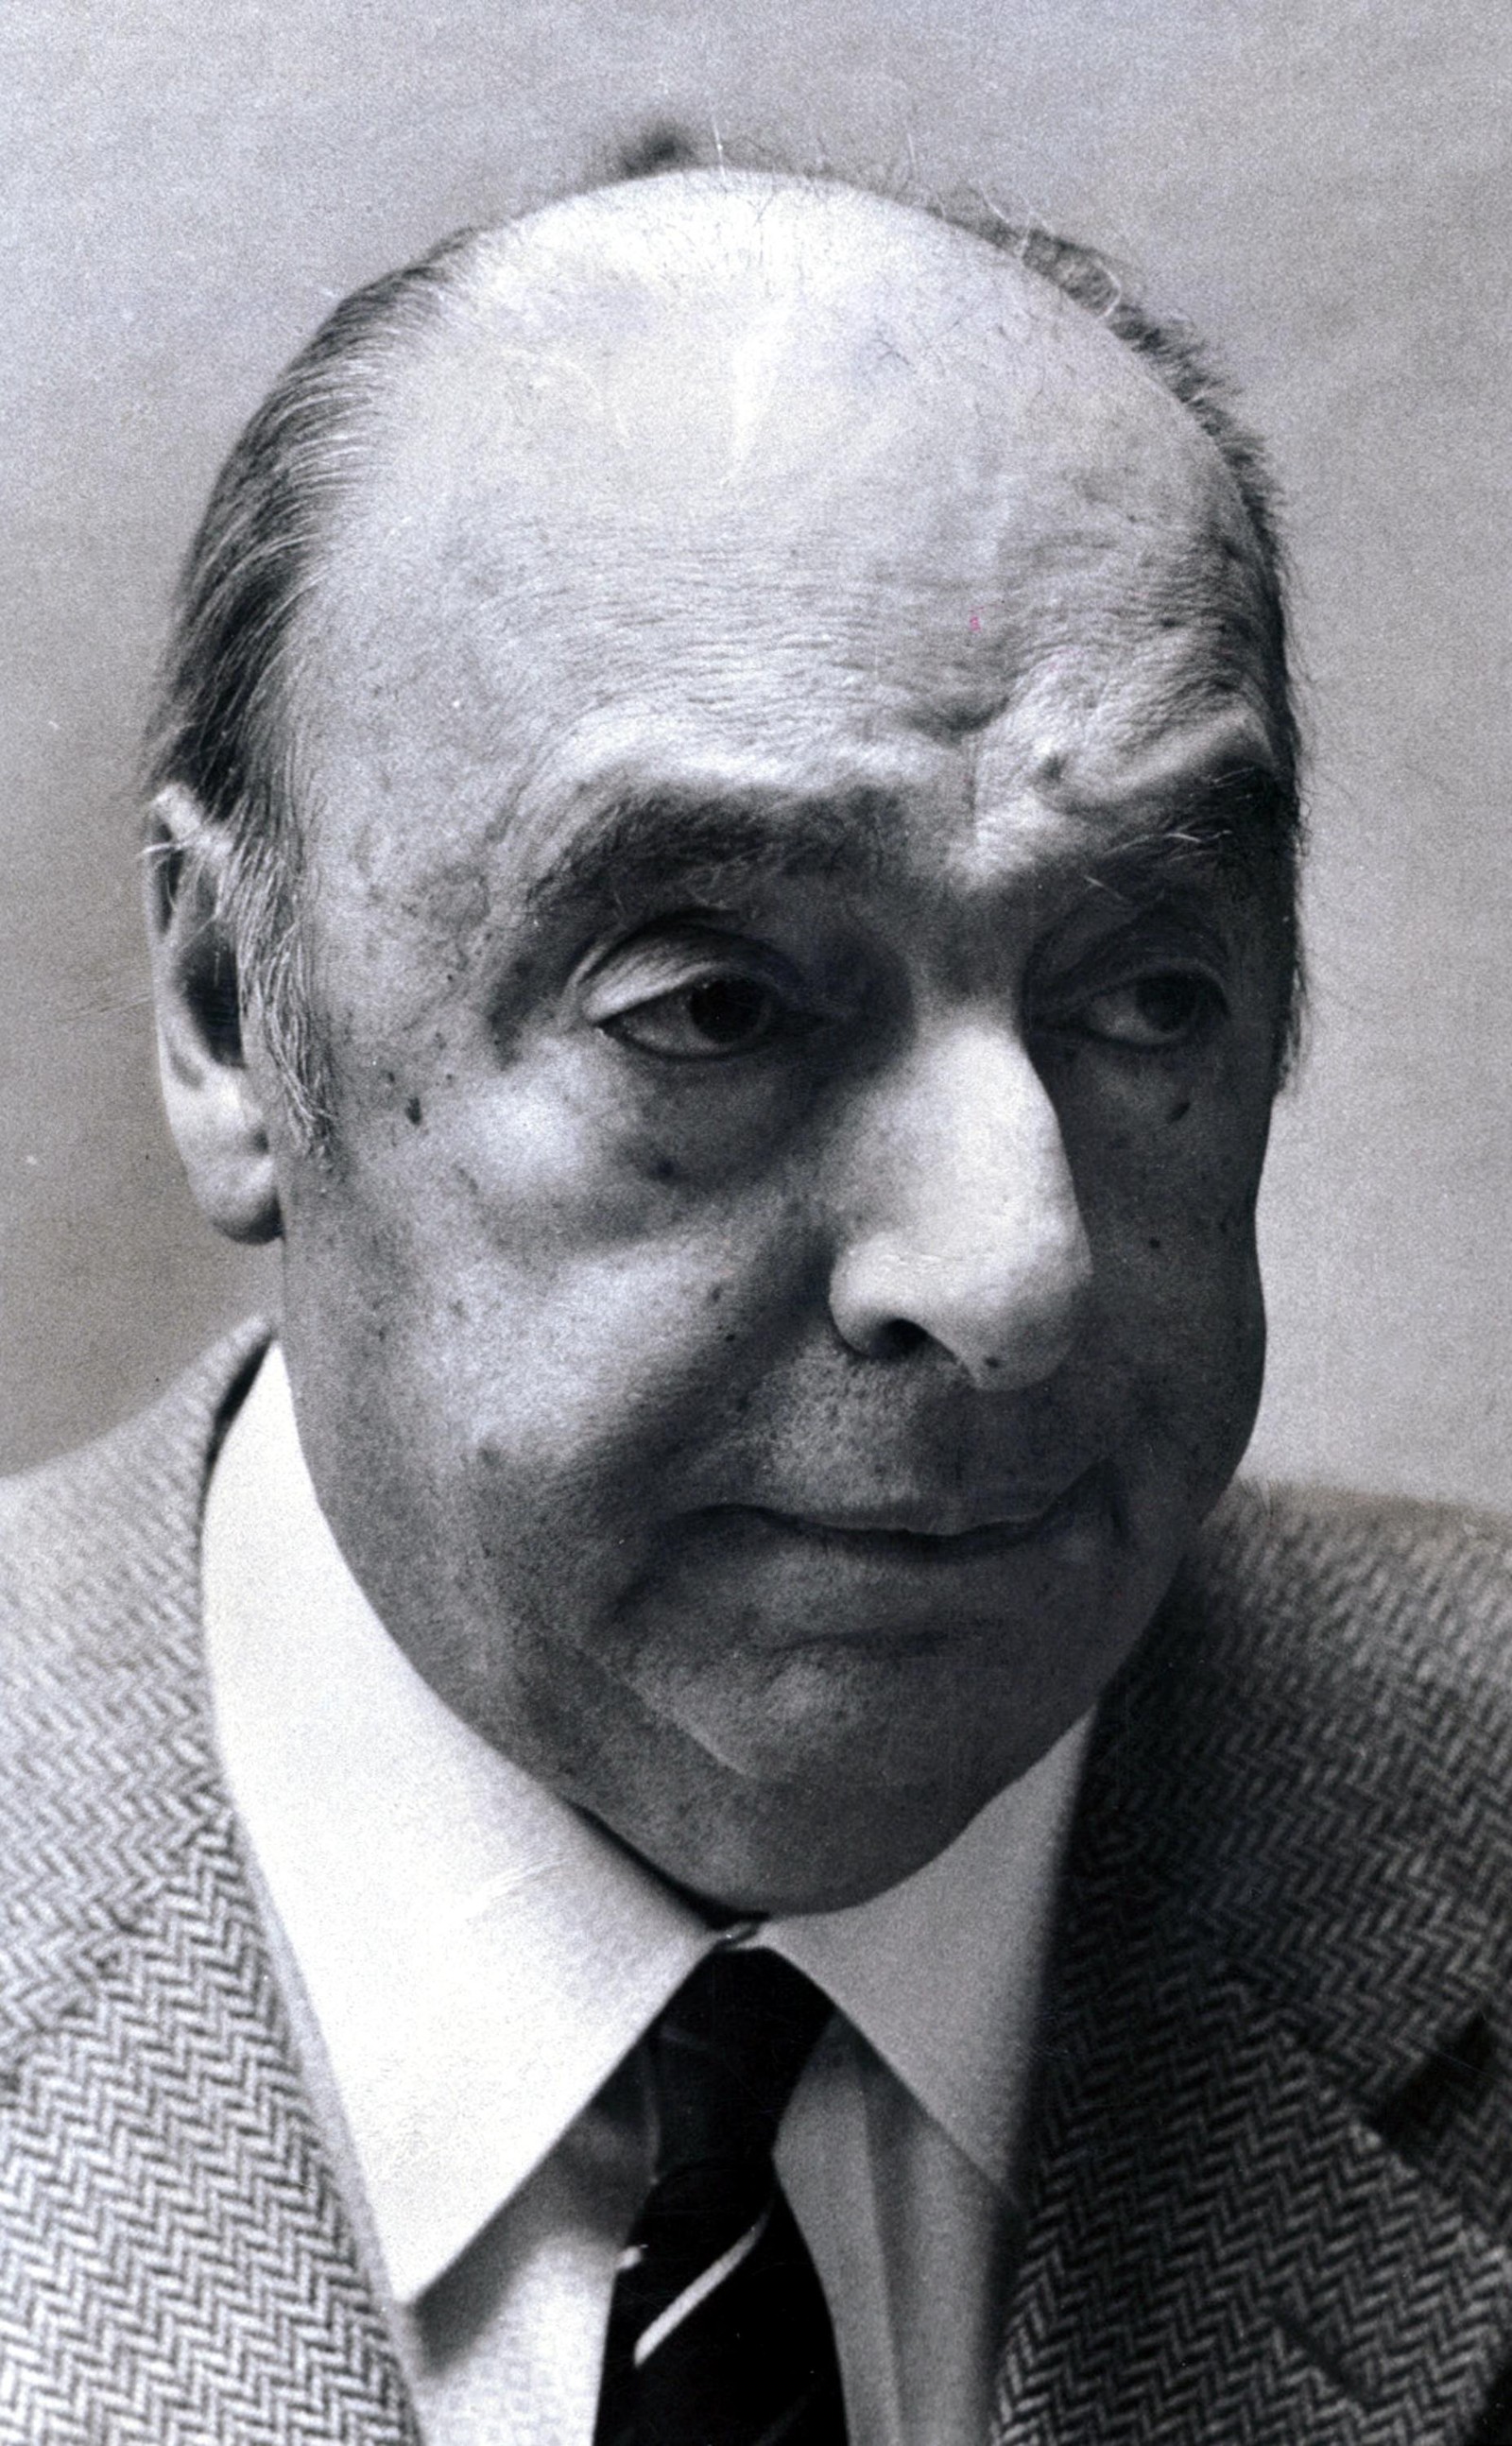 Pablo Neruda, que vivei entre 1904 e 1973, ao que tudo indica, foi envenenado, e não morreu de câncer, conforme versão oficial.  — Foto: Jack Manning / The New York Times